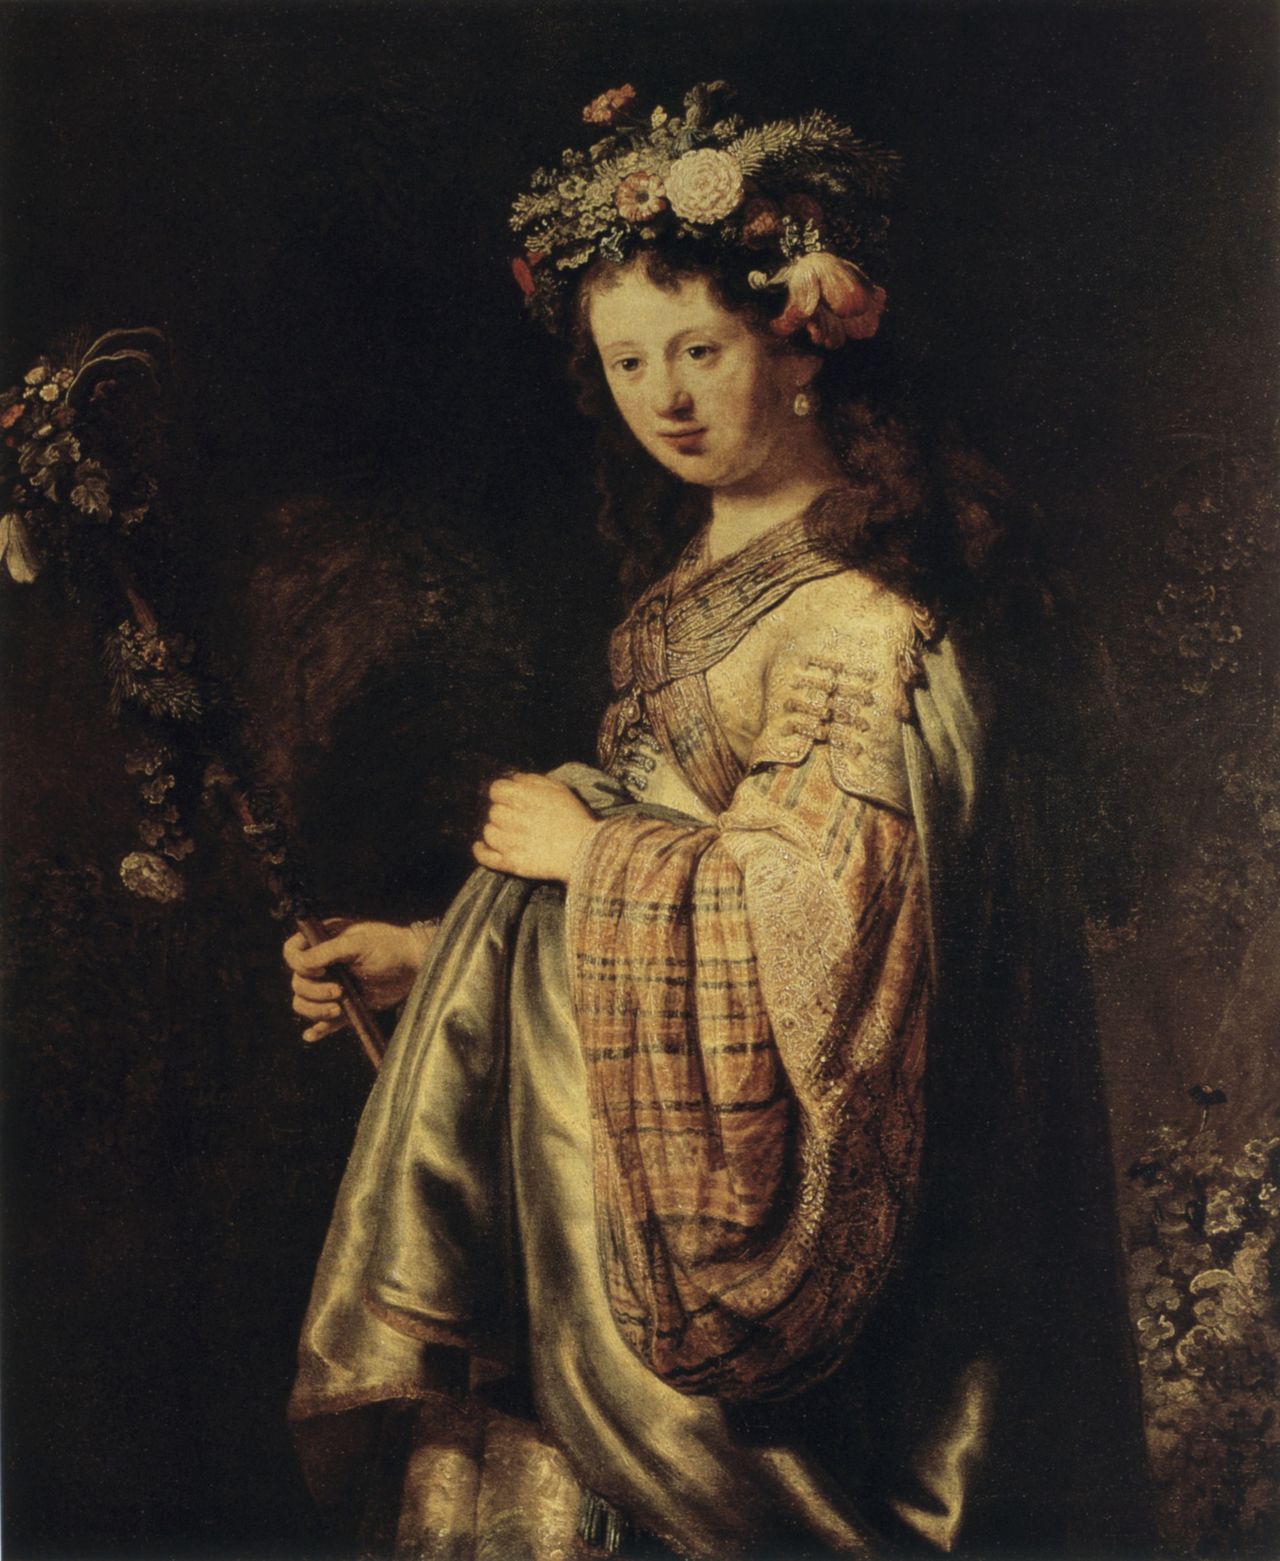 «Η Σάσκια ως Φλόρα» (1634). Η Σάσκια φαν Όιλενμπουρχ (1612-42), ανιψιά εμπόρου έργων τέχνης και κόρη εύπορης οικογένειας, ήταν η σύζυγος του ζωγράφου. Πέθανε σε ηλικία 30 χρονών από φυματίωση. 